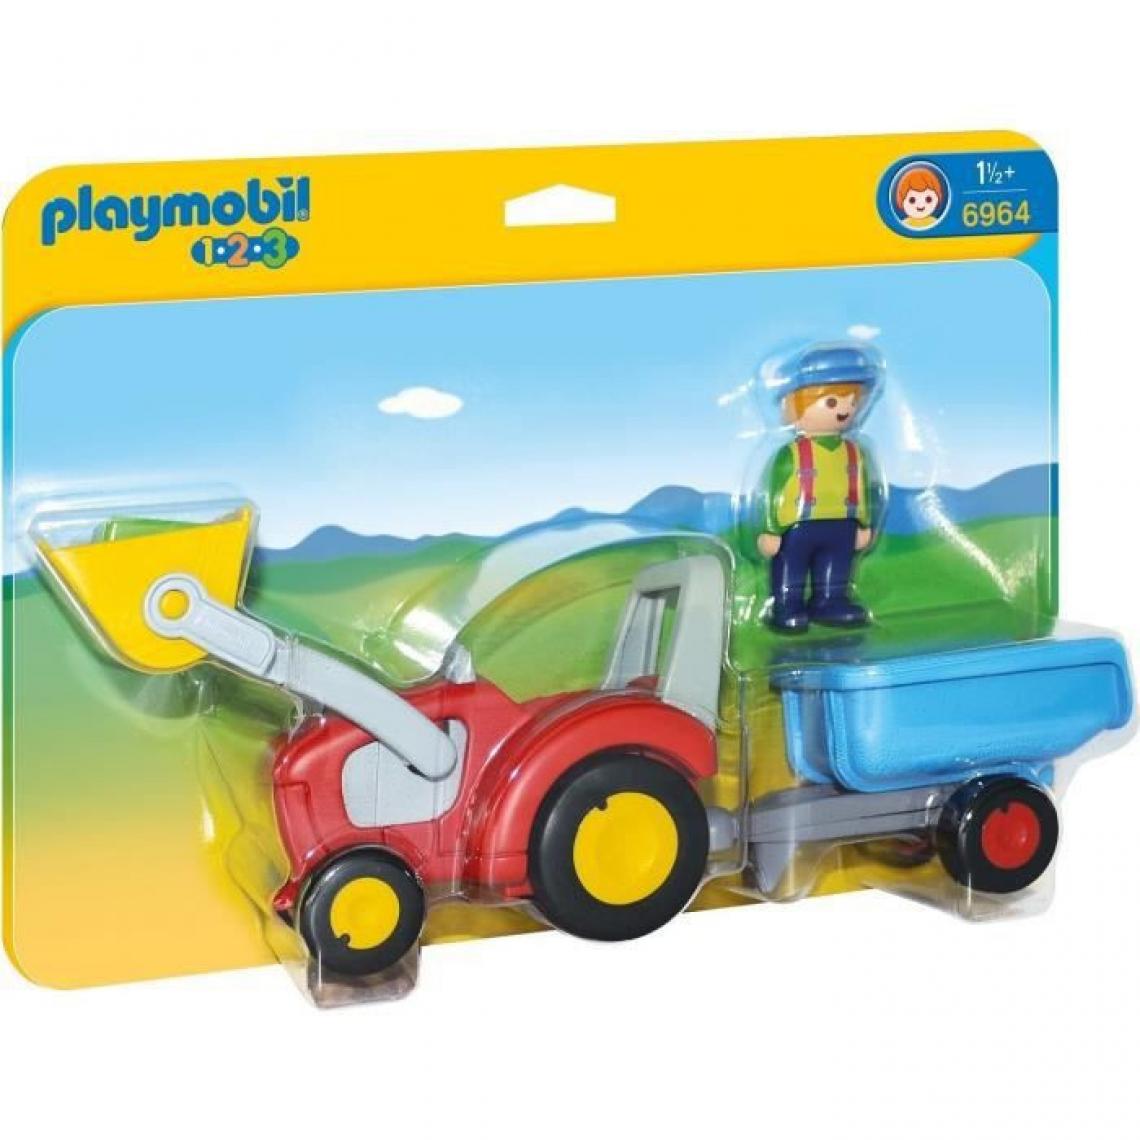 Playmobil - PLAYMOBIL 6964 - PLAYMOBIL 1.2.3 - Fermier avec Tracteur et Remorque - Playmobil